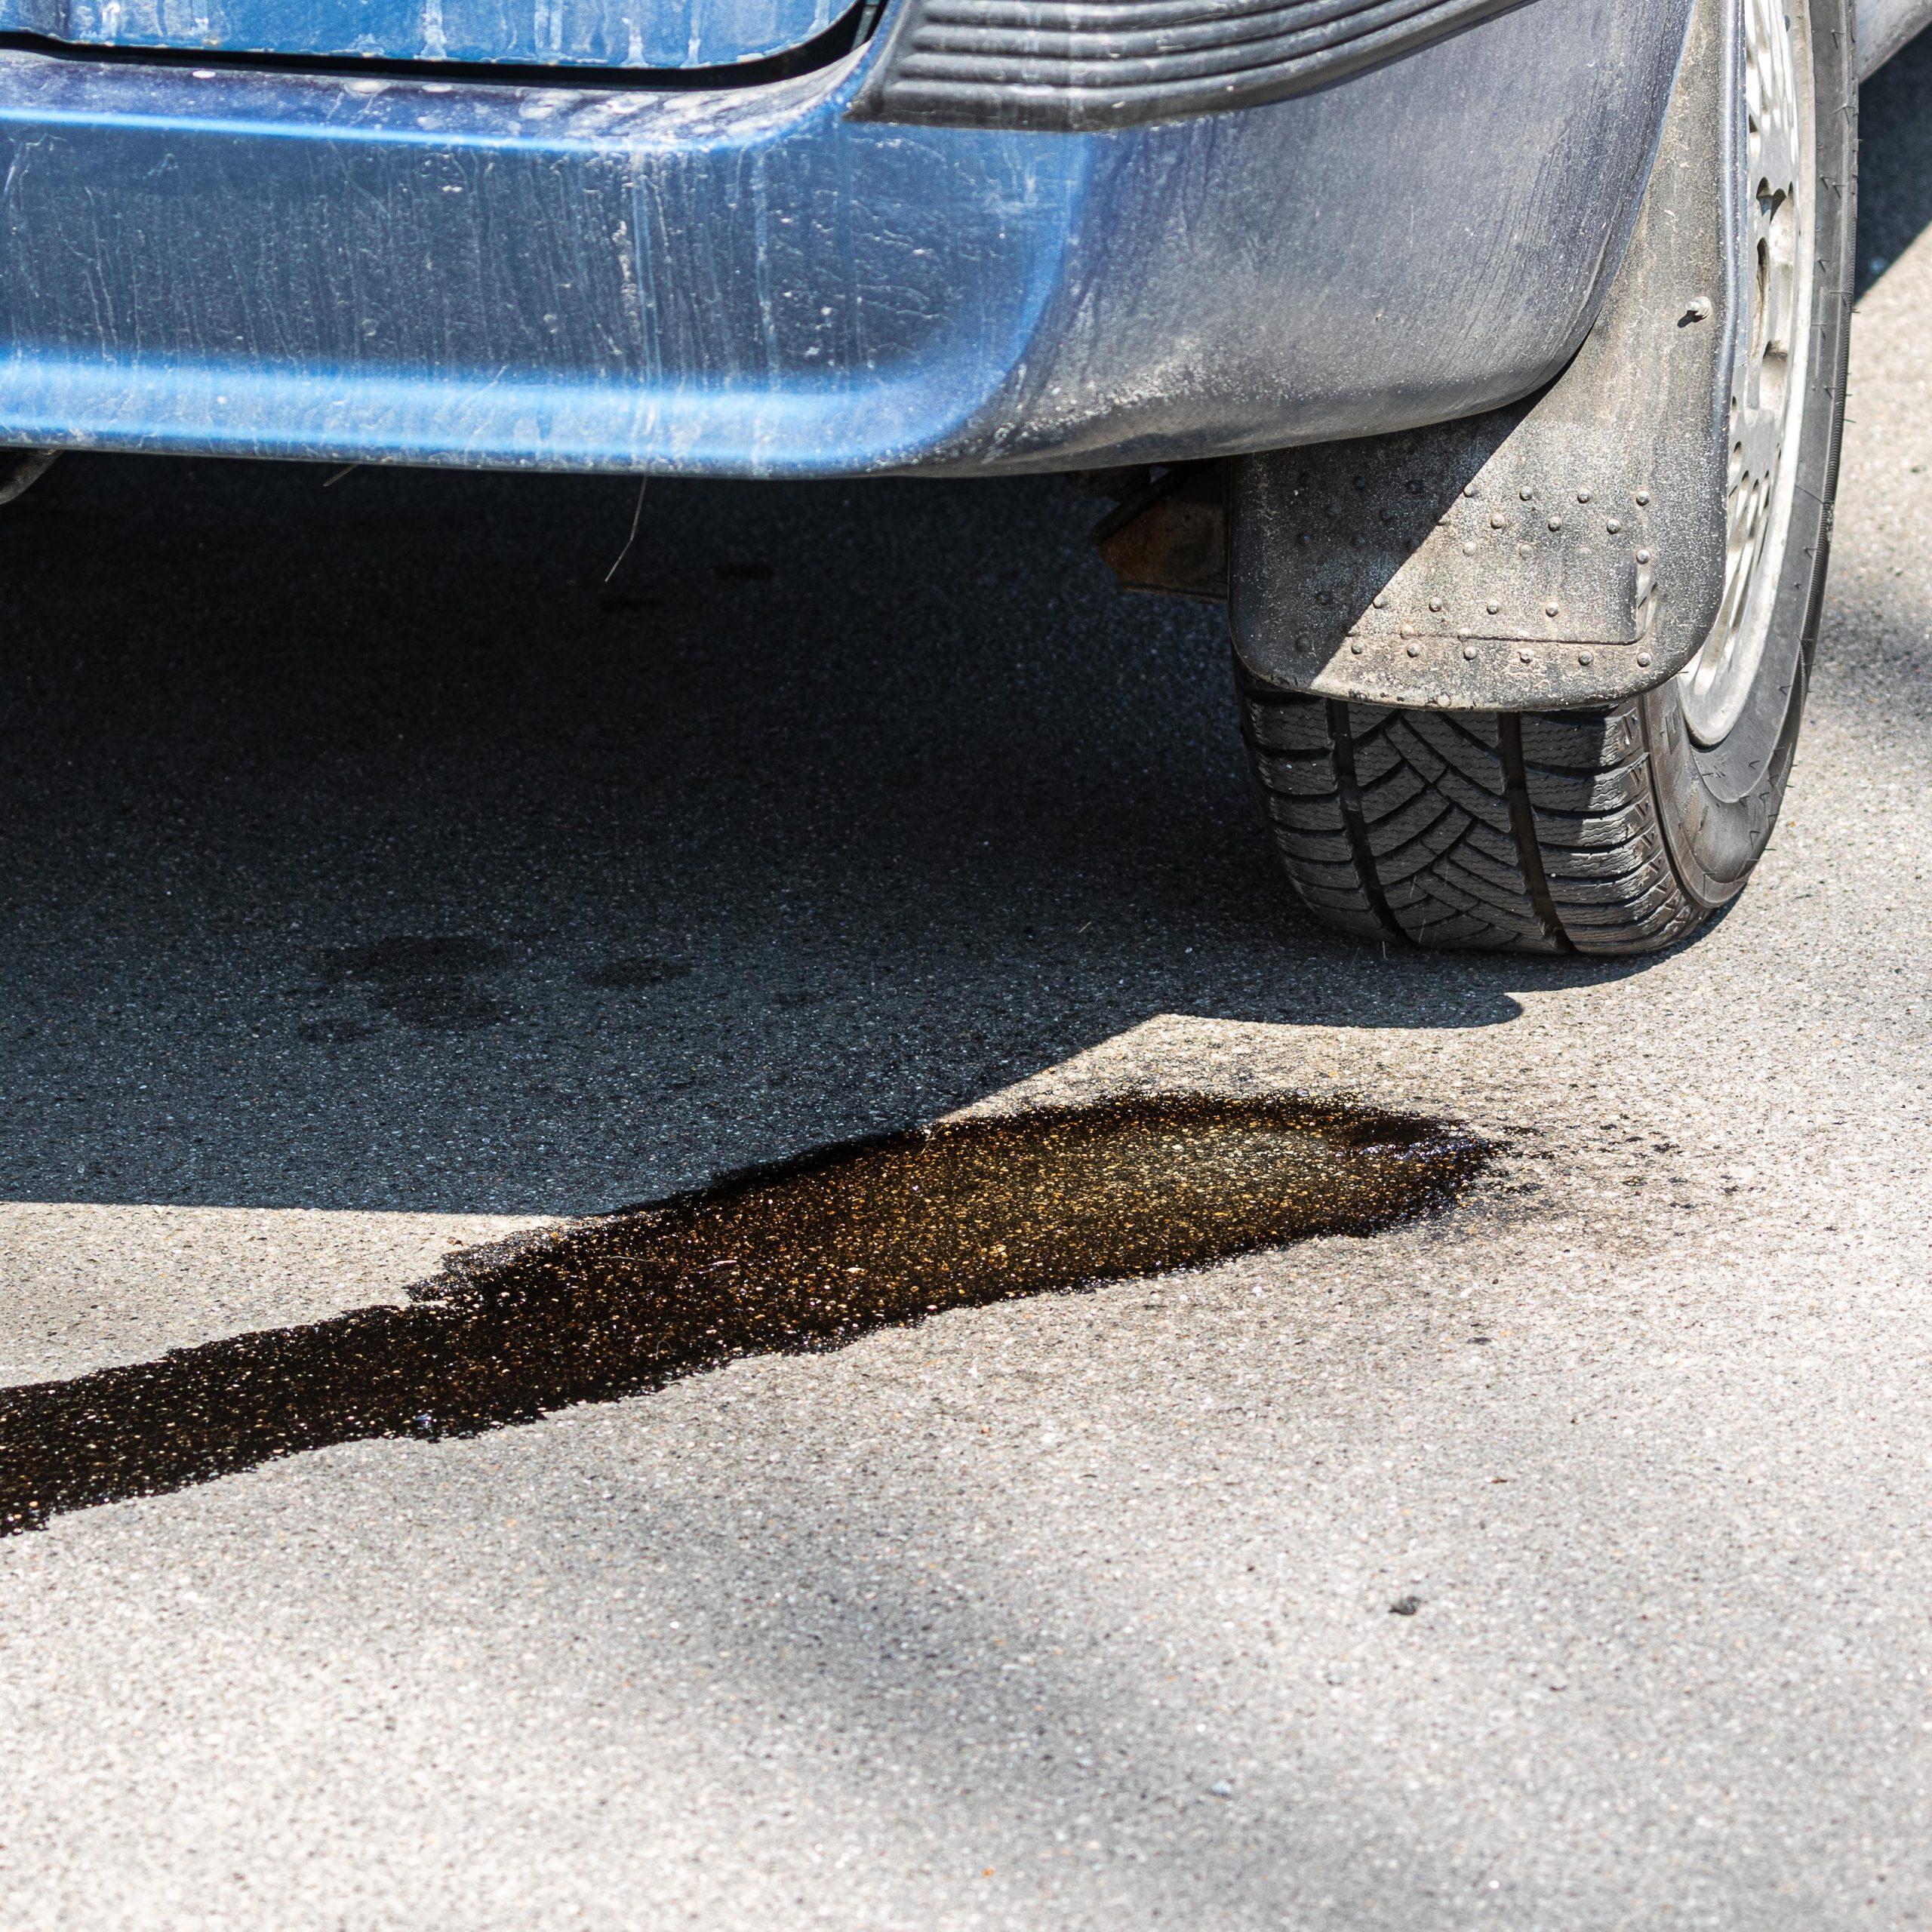 ¿Sabes qué hacer si encuentras una mancha debajo de tu coche?